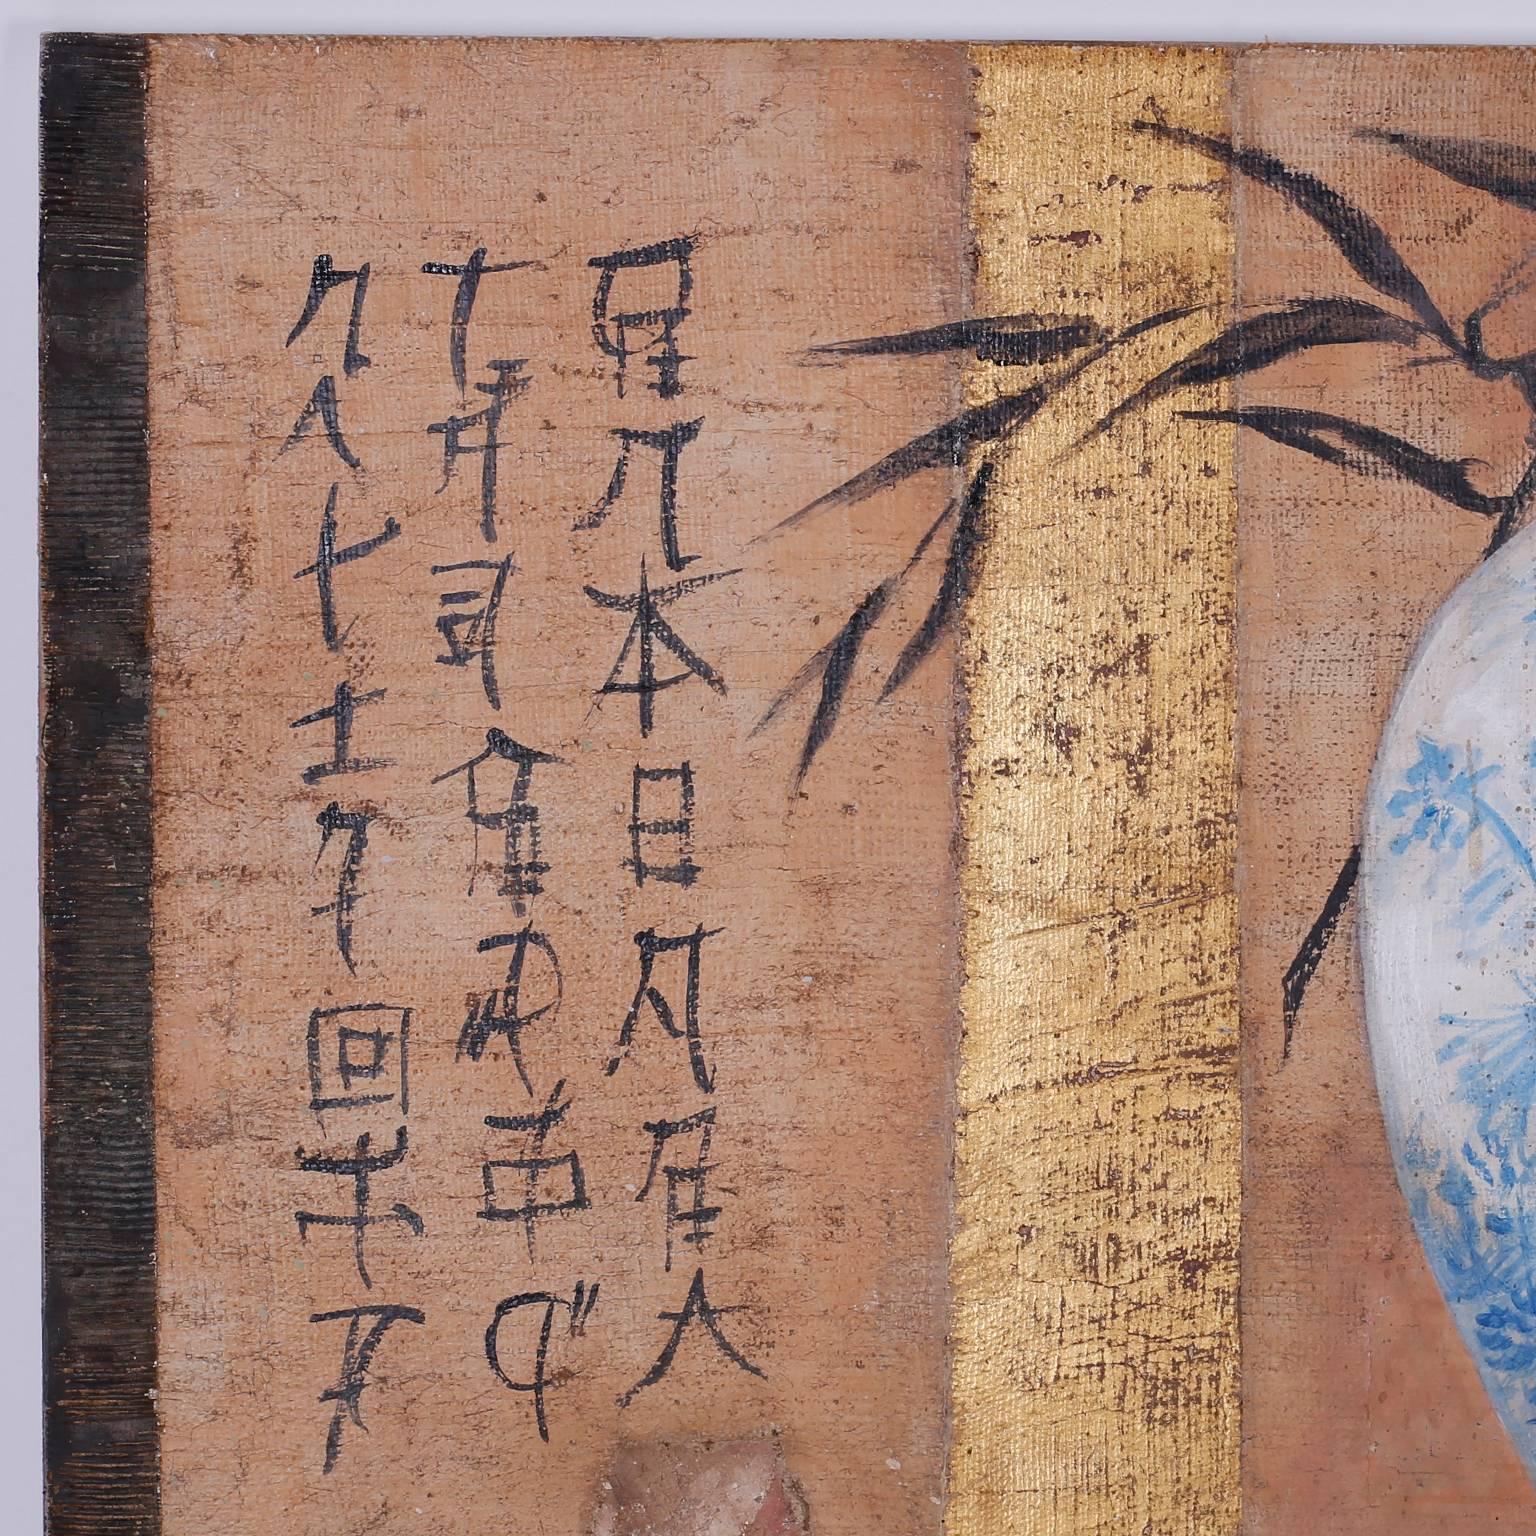 Pittura a olio e collage su iuta di un vaso cinese blu e bianco inserito in una realtà decostruita con una suggestiva miscela di tecniche. Eseguito in stile affresco. Firmato Jacques Lamy in basso a destra.